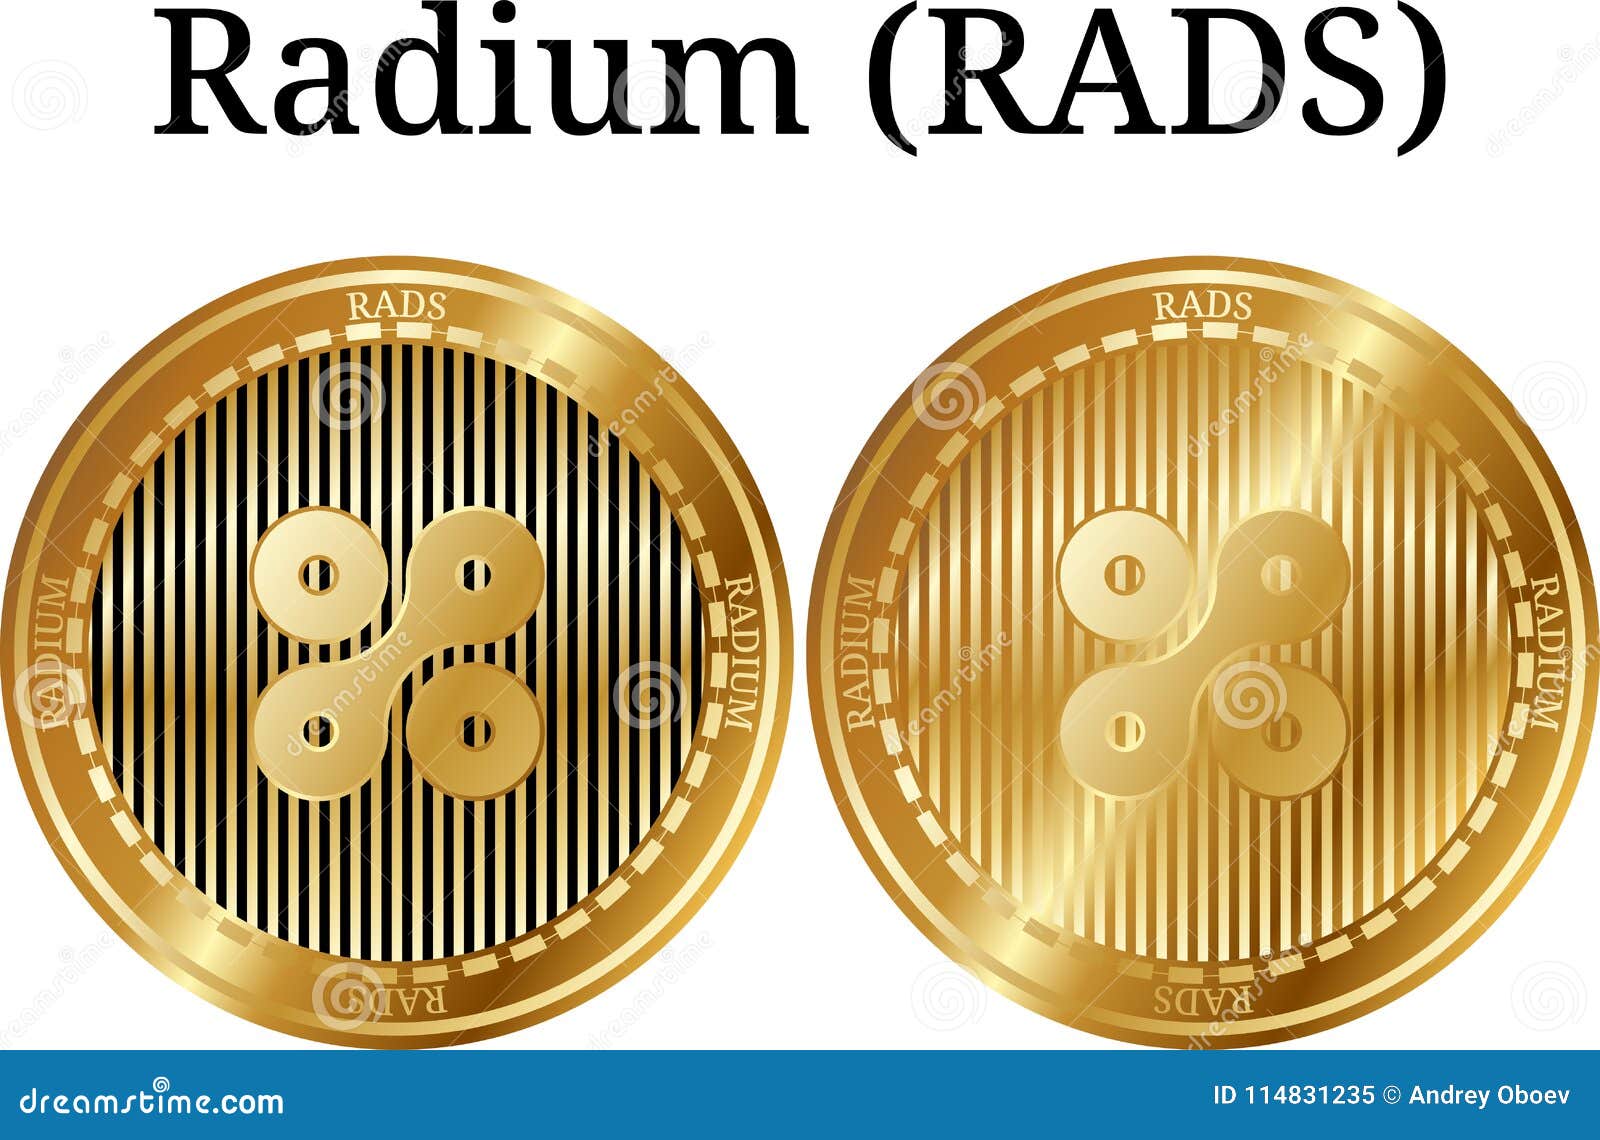 where to buy radium crypto